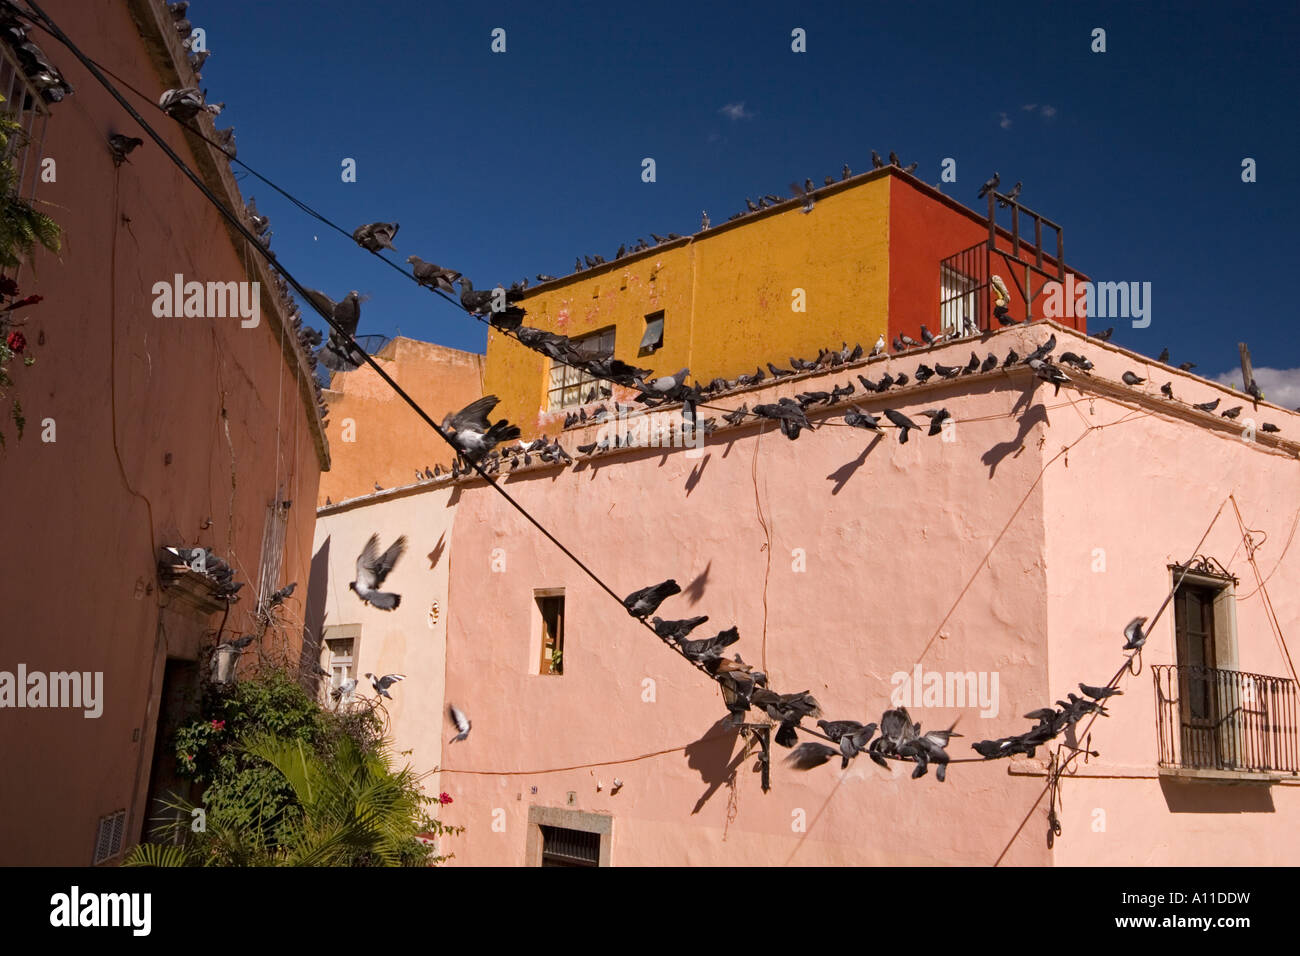 A Guanajuato popular district overrun by pigeons (Mexico). Quartier populaire de Guanajuato envahi par les pigeons (Mexique). Stock Photo